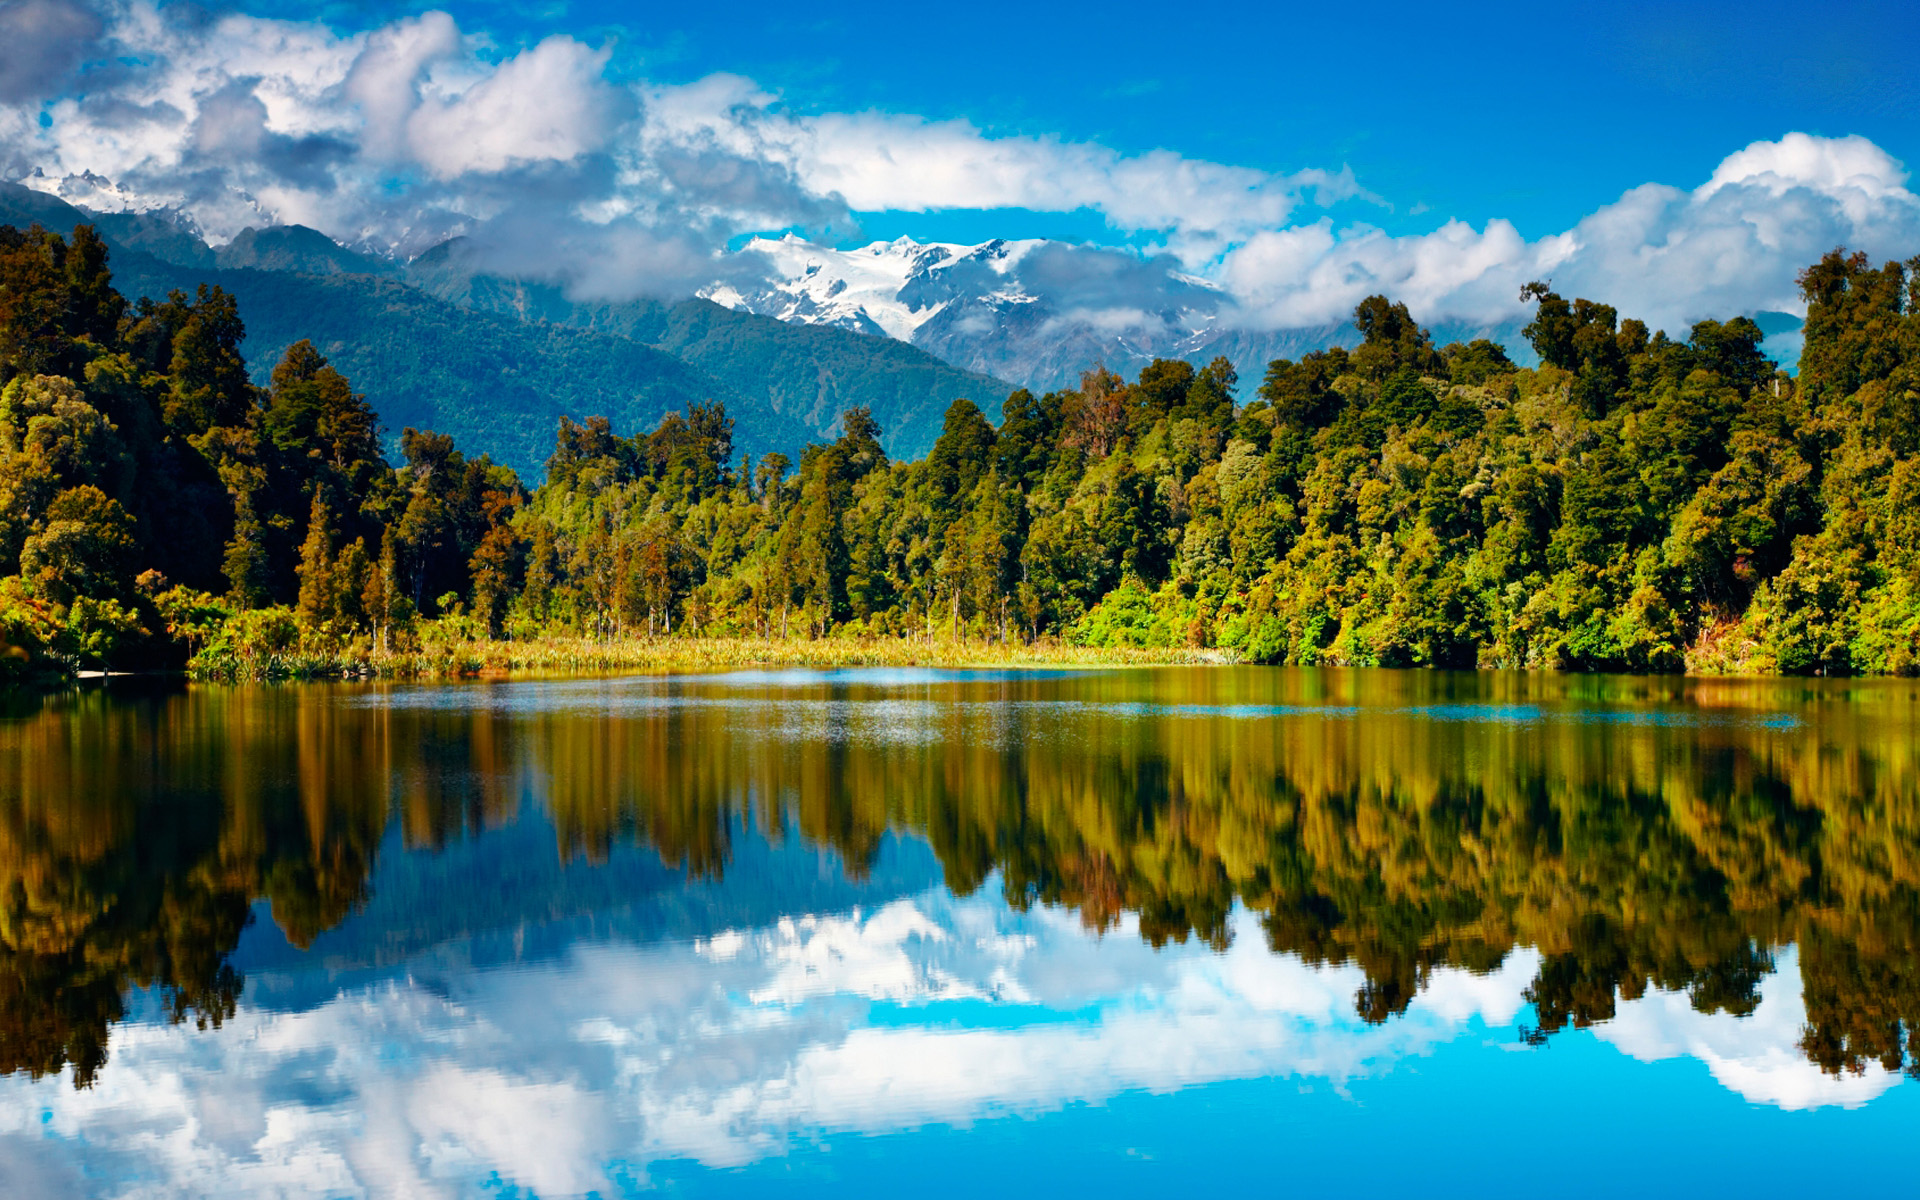 Description: New Zealand Scenery Wallpaper is a hi res Wallpaper for ...